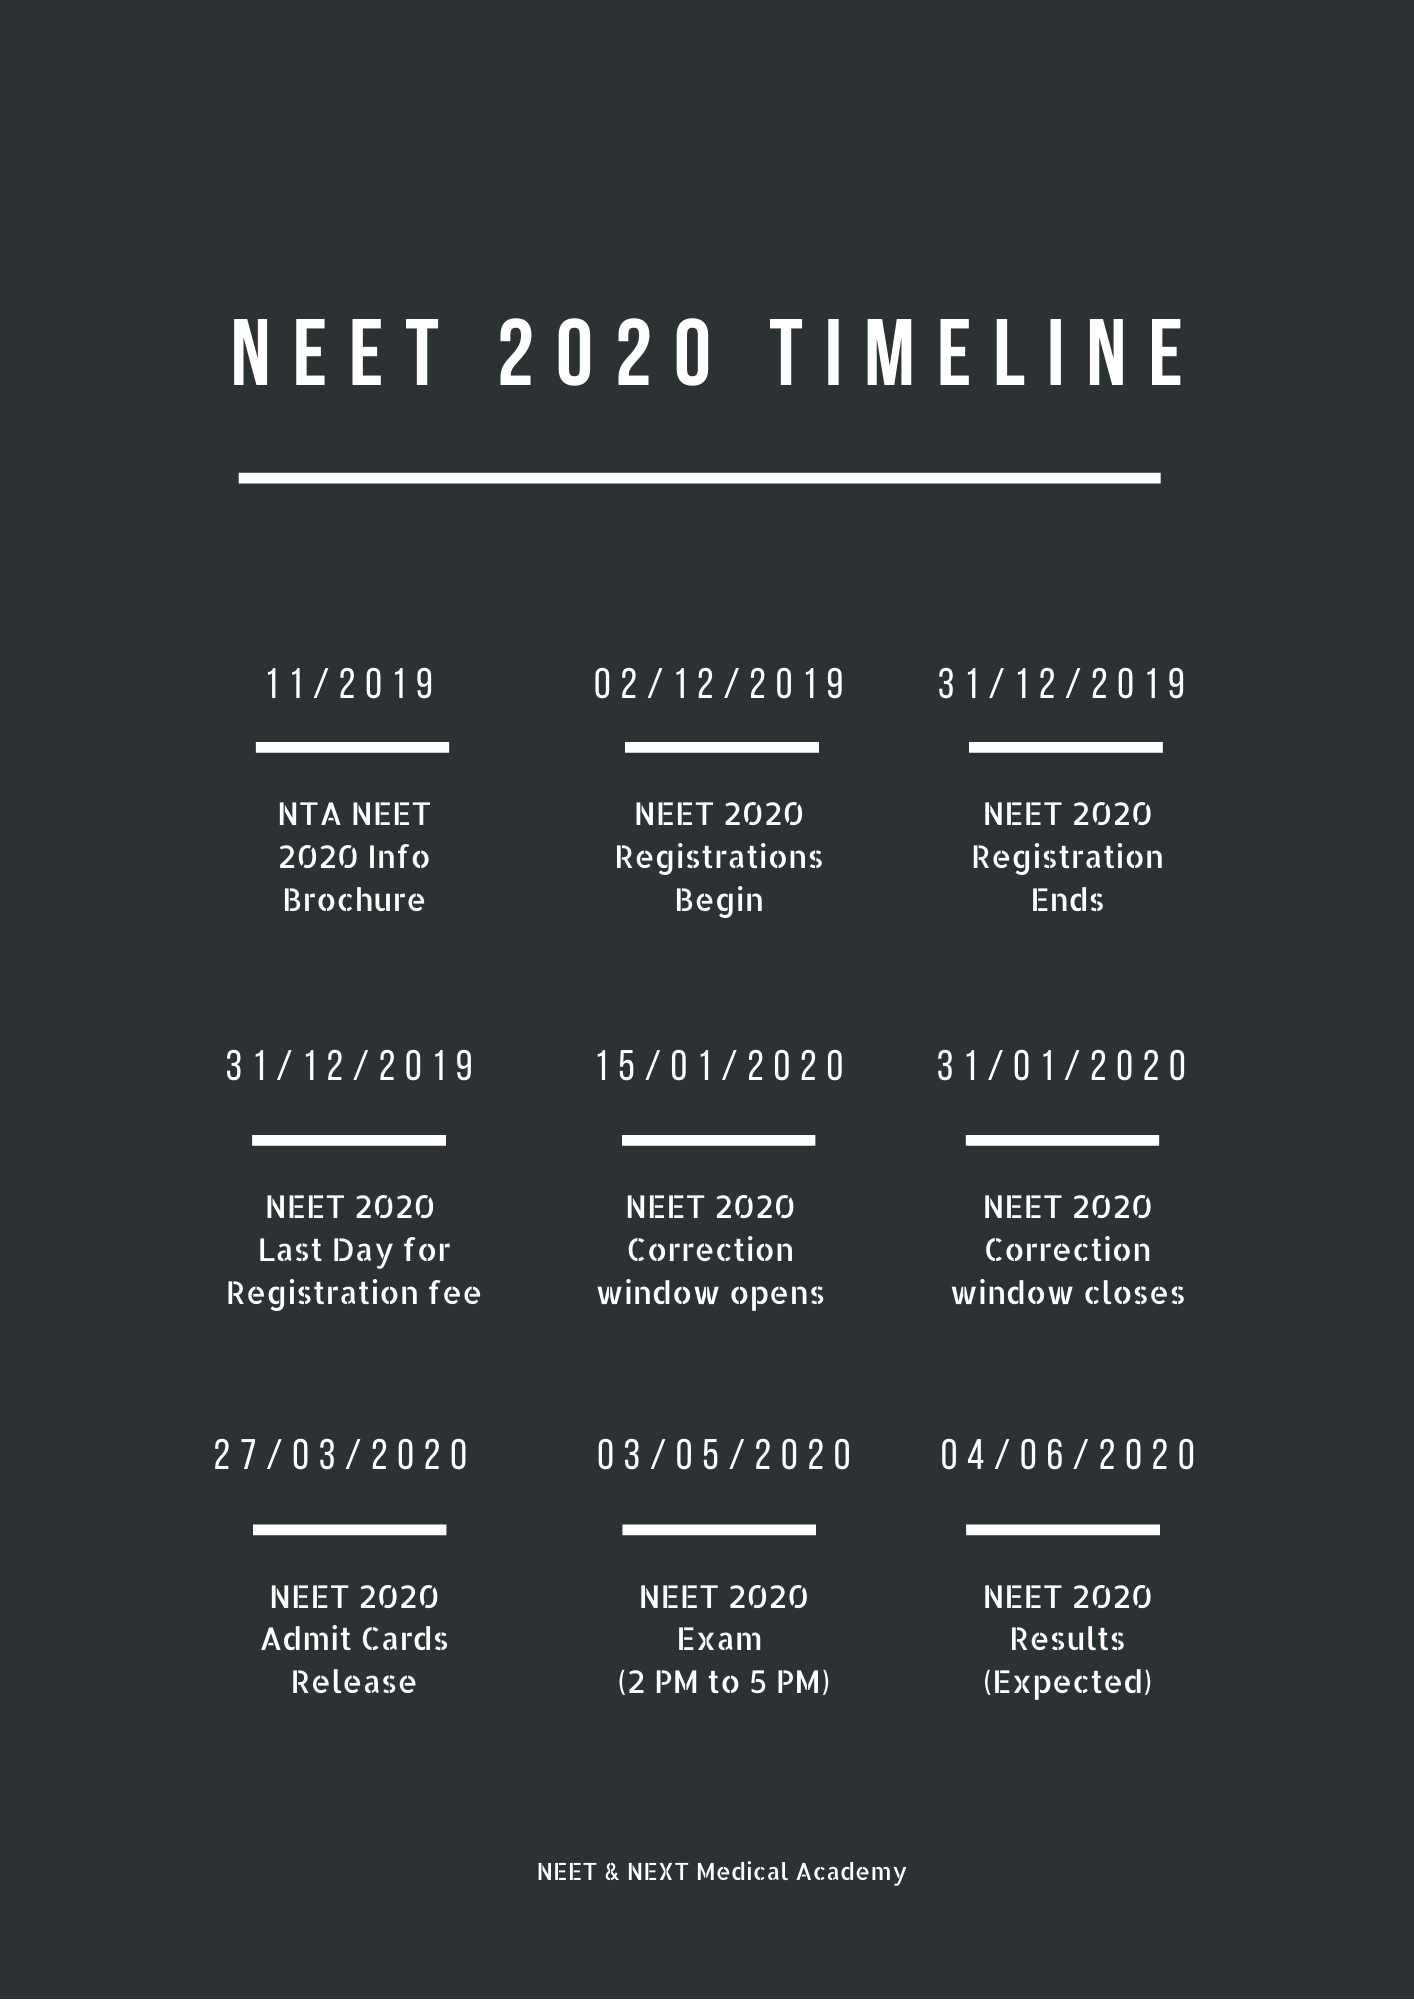 NEET 2020 Timeline